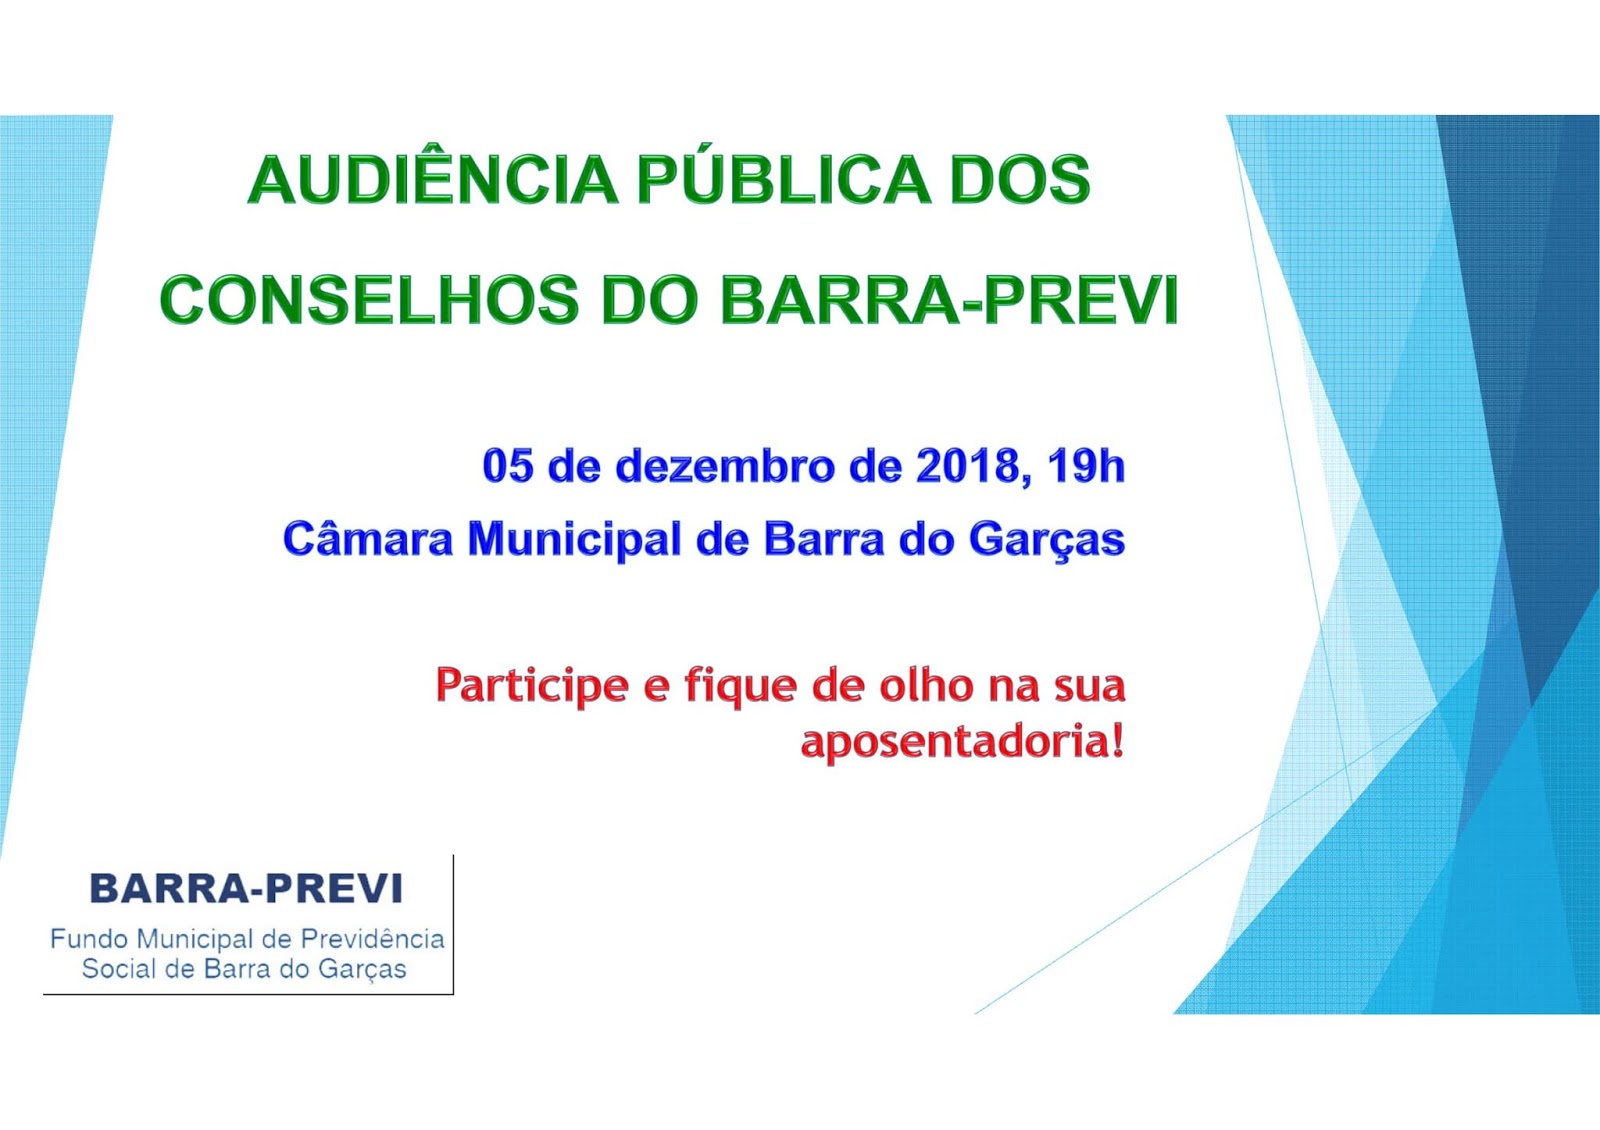 Conselhos do BARRA-PREVI farão Audiência Pública para prestação de contas nesta quarta-feira